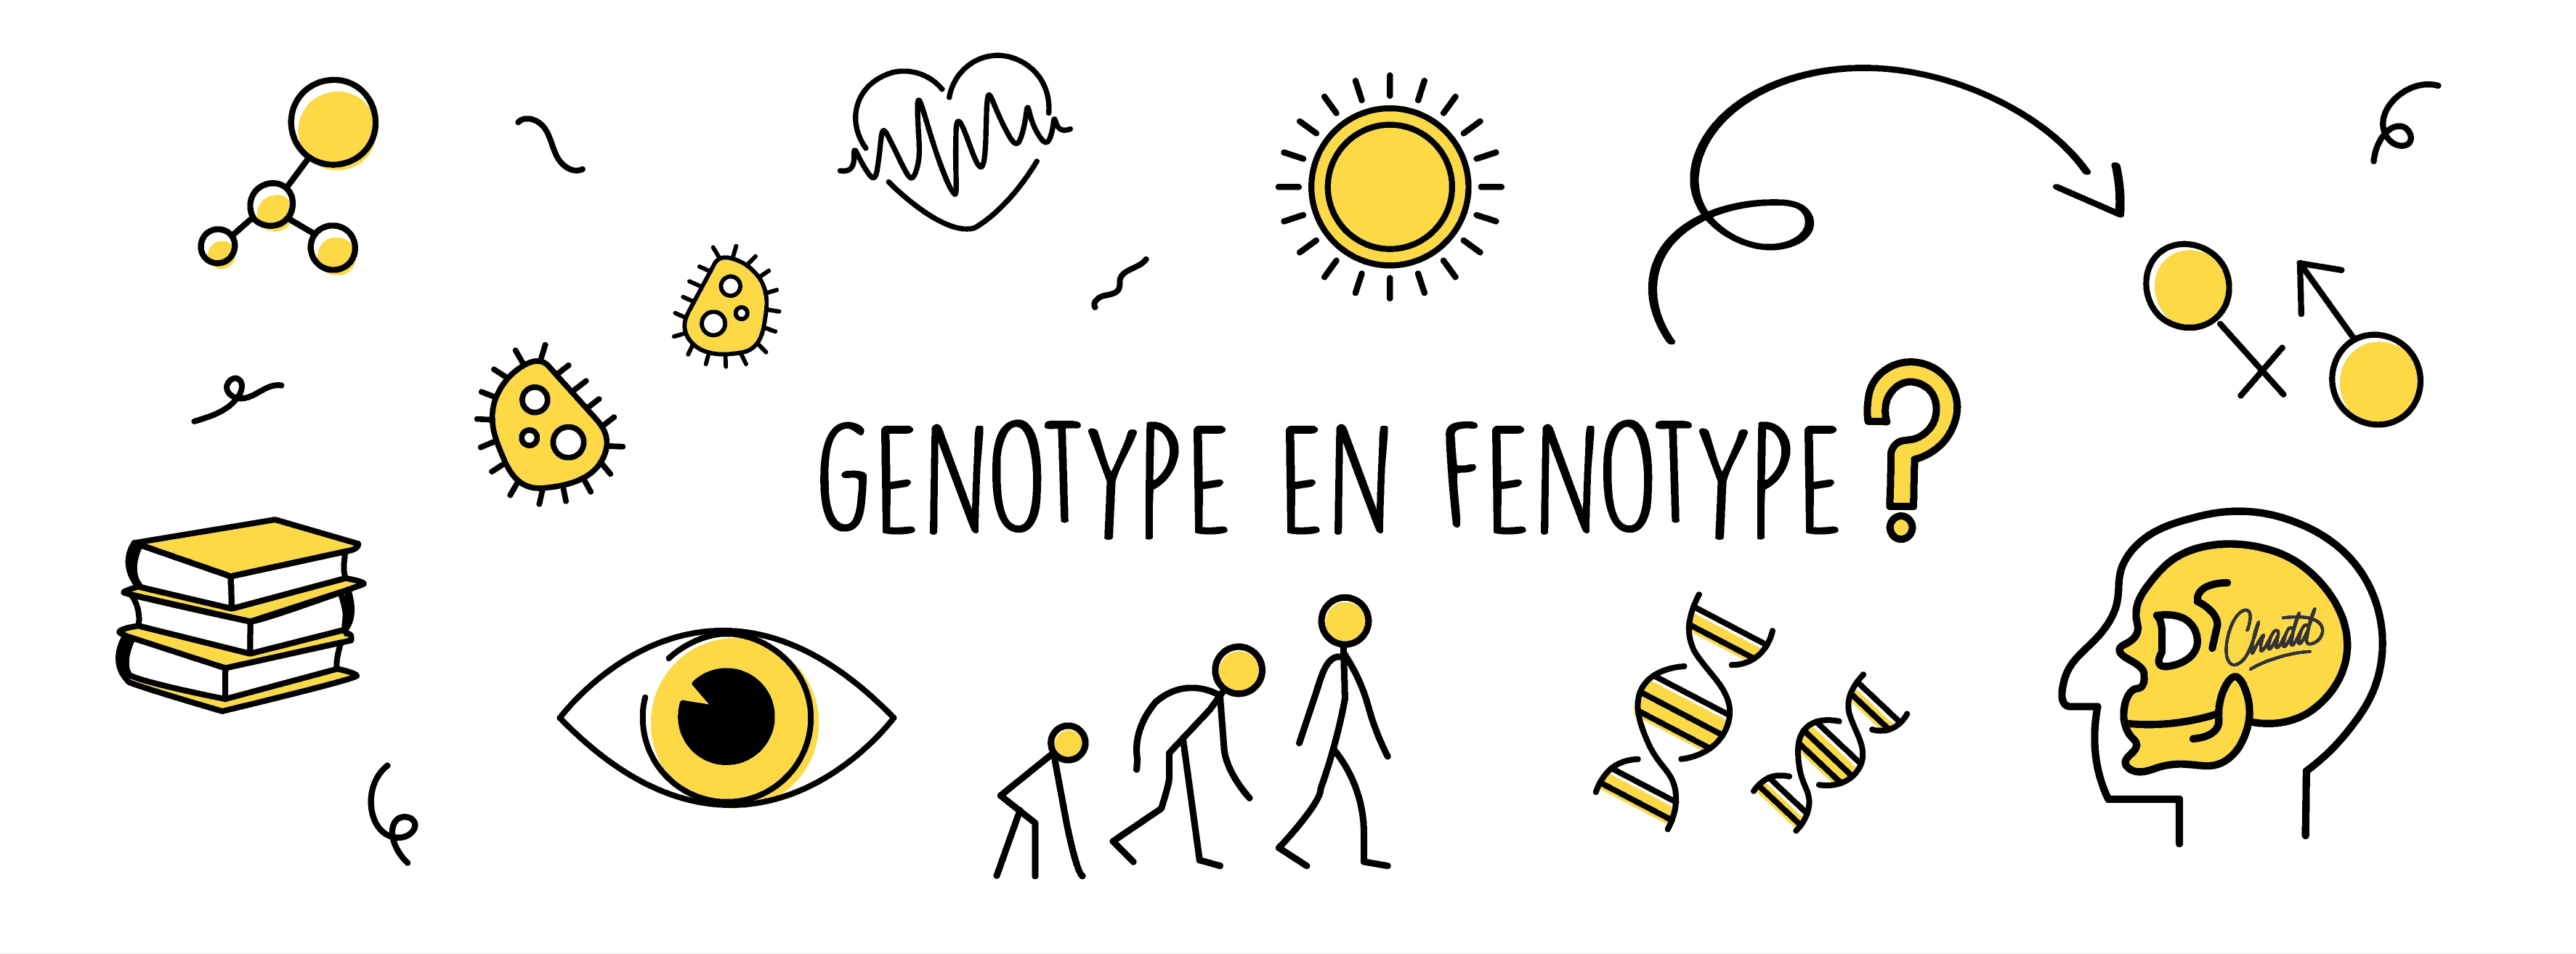 Genotype en fenotype